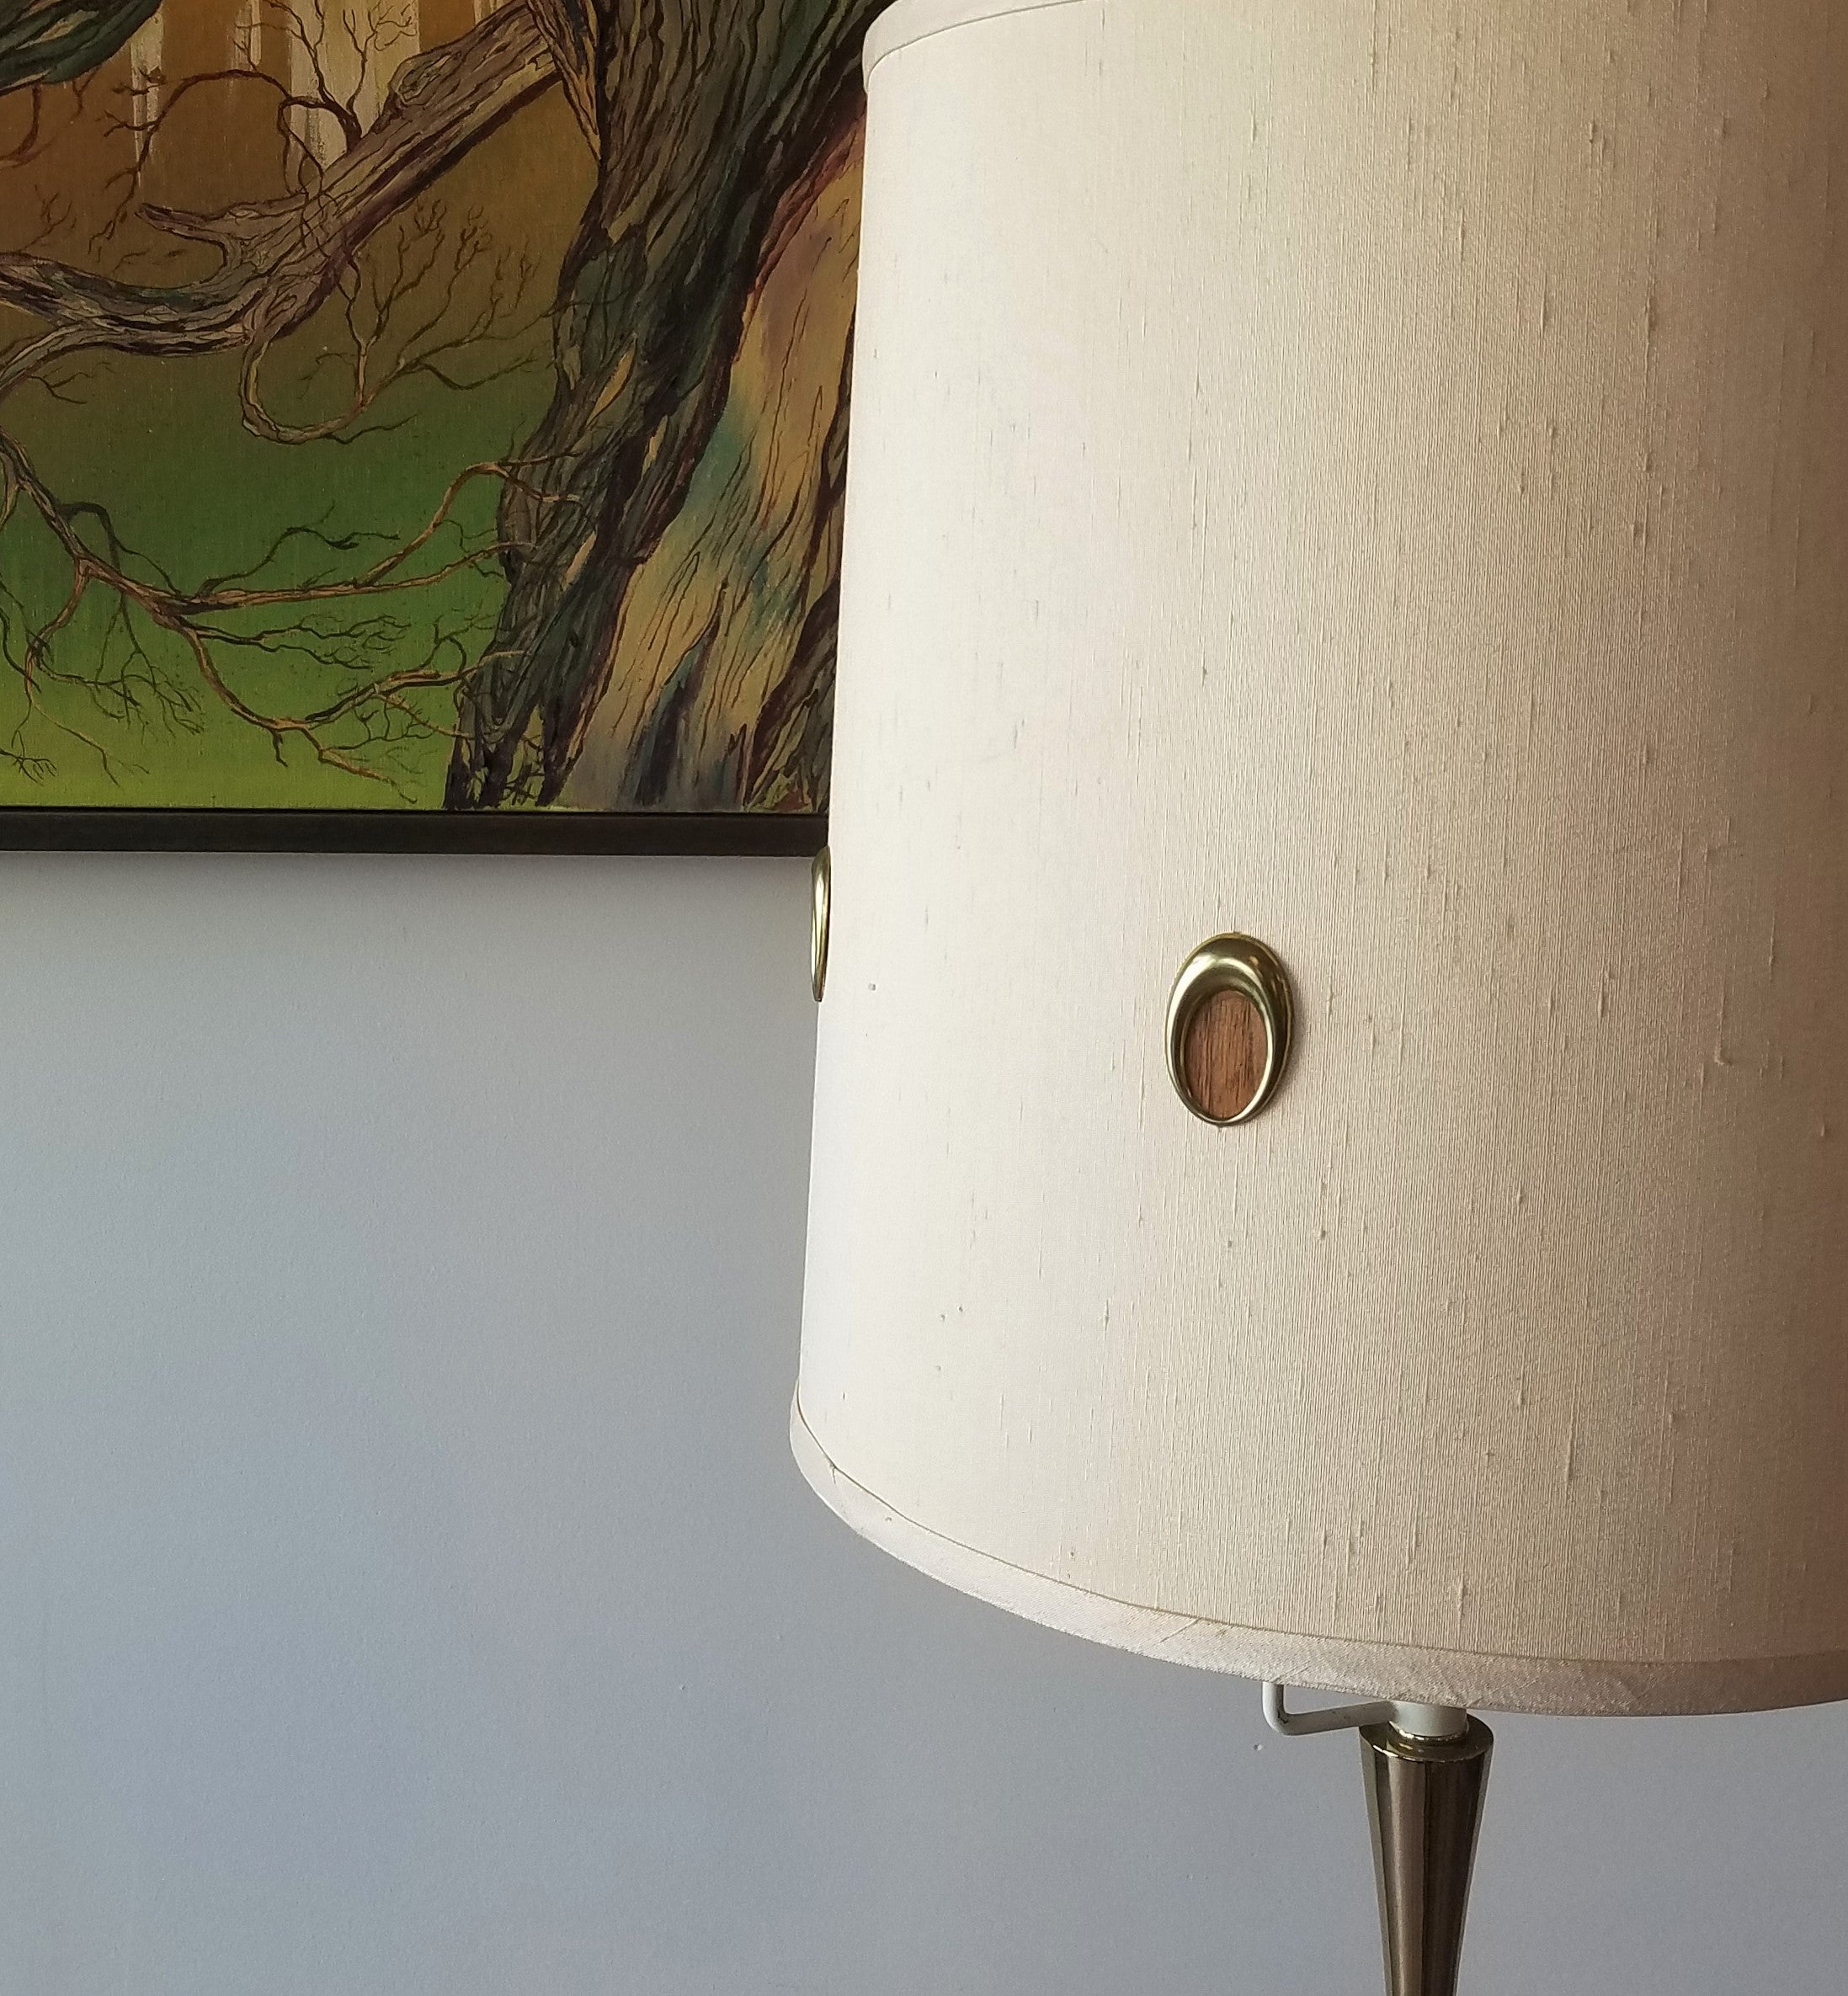 Laurel Lamp Co's Floor Lamp